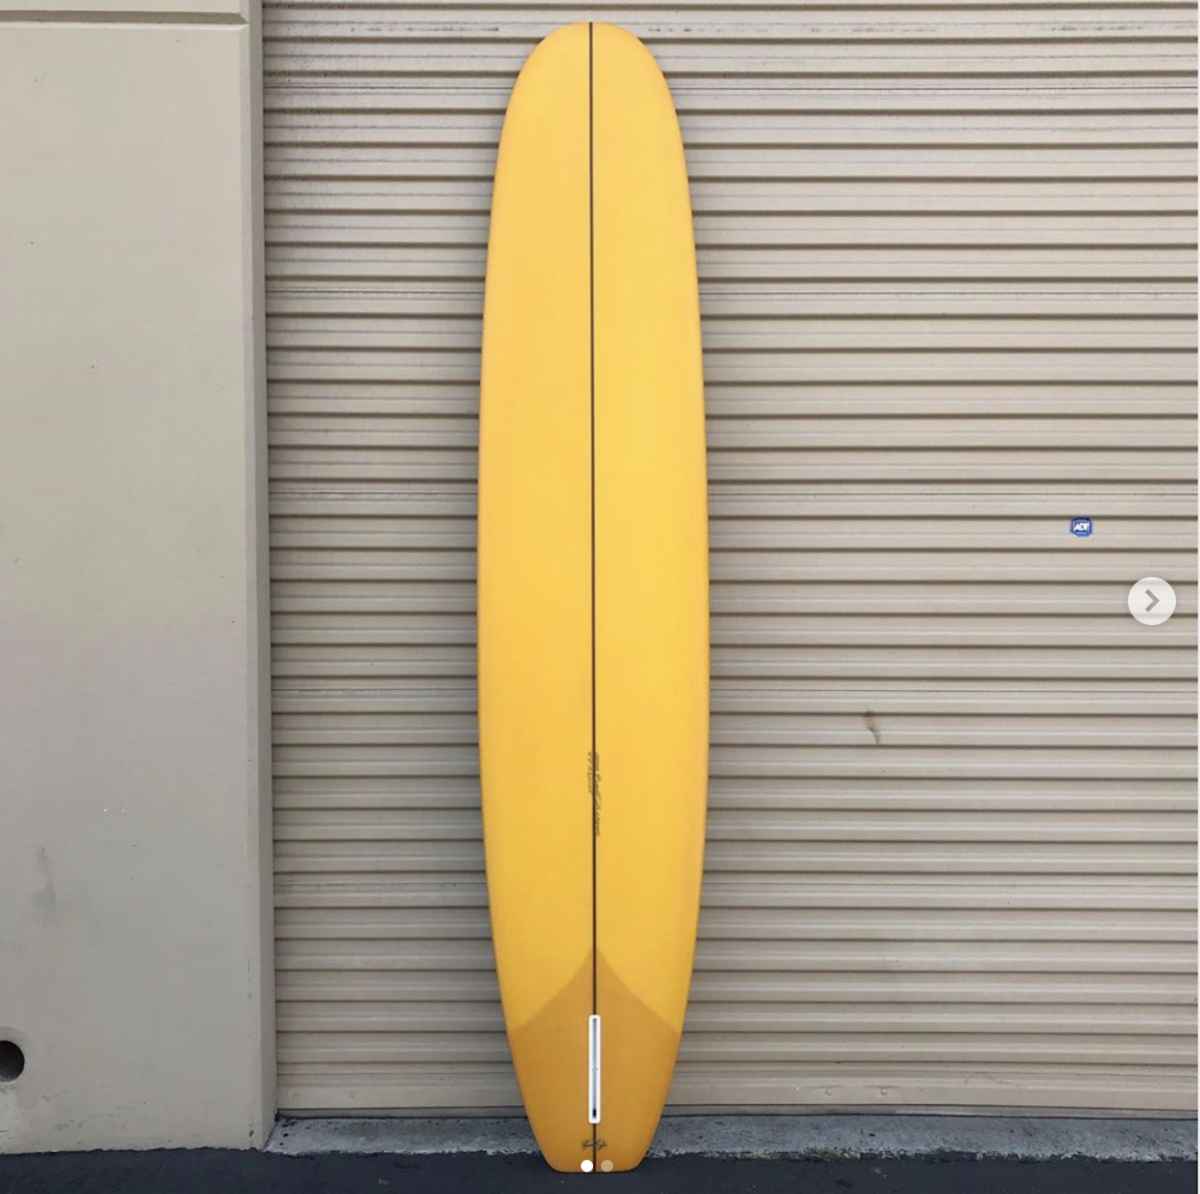 Nation Surfboards 人気のロングボード2モデルが追加決定 Nakisurfスタッフブログ ナキサーフボードカリフォルニア